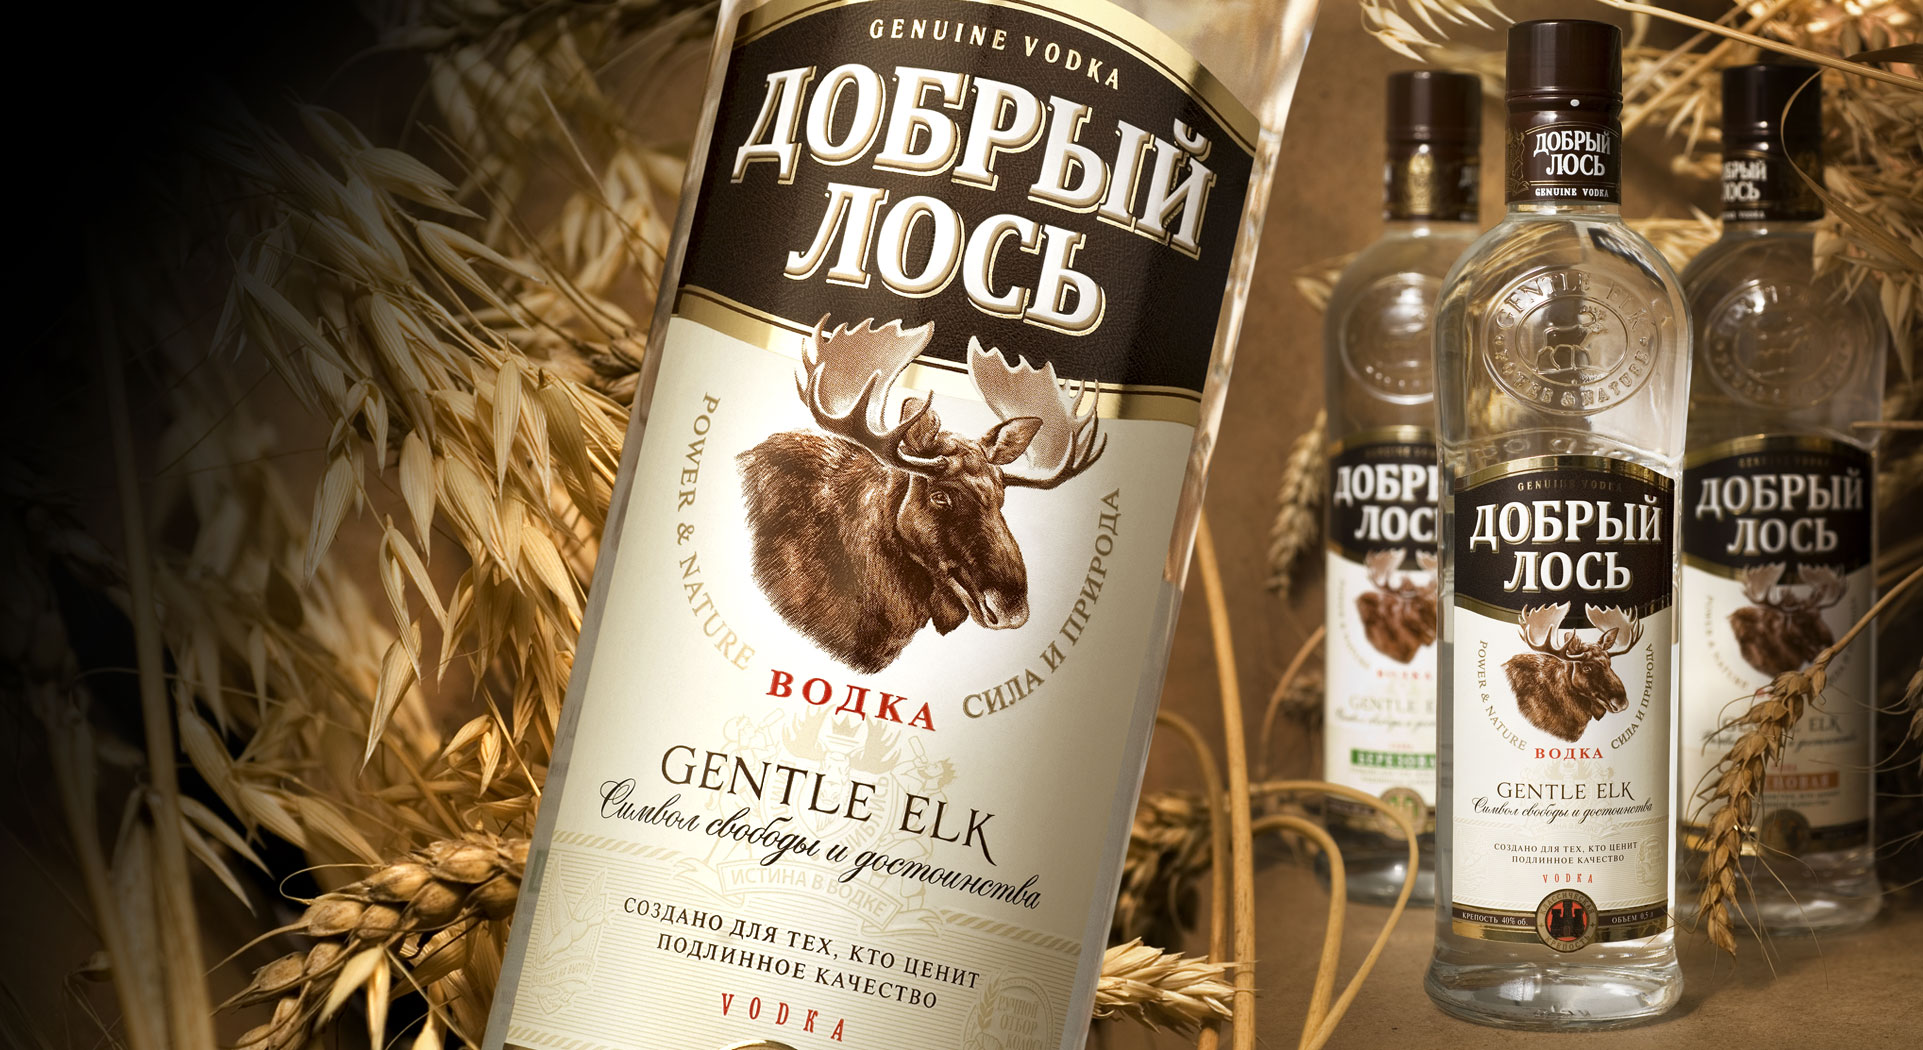 Good vodka Gentle Elk